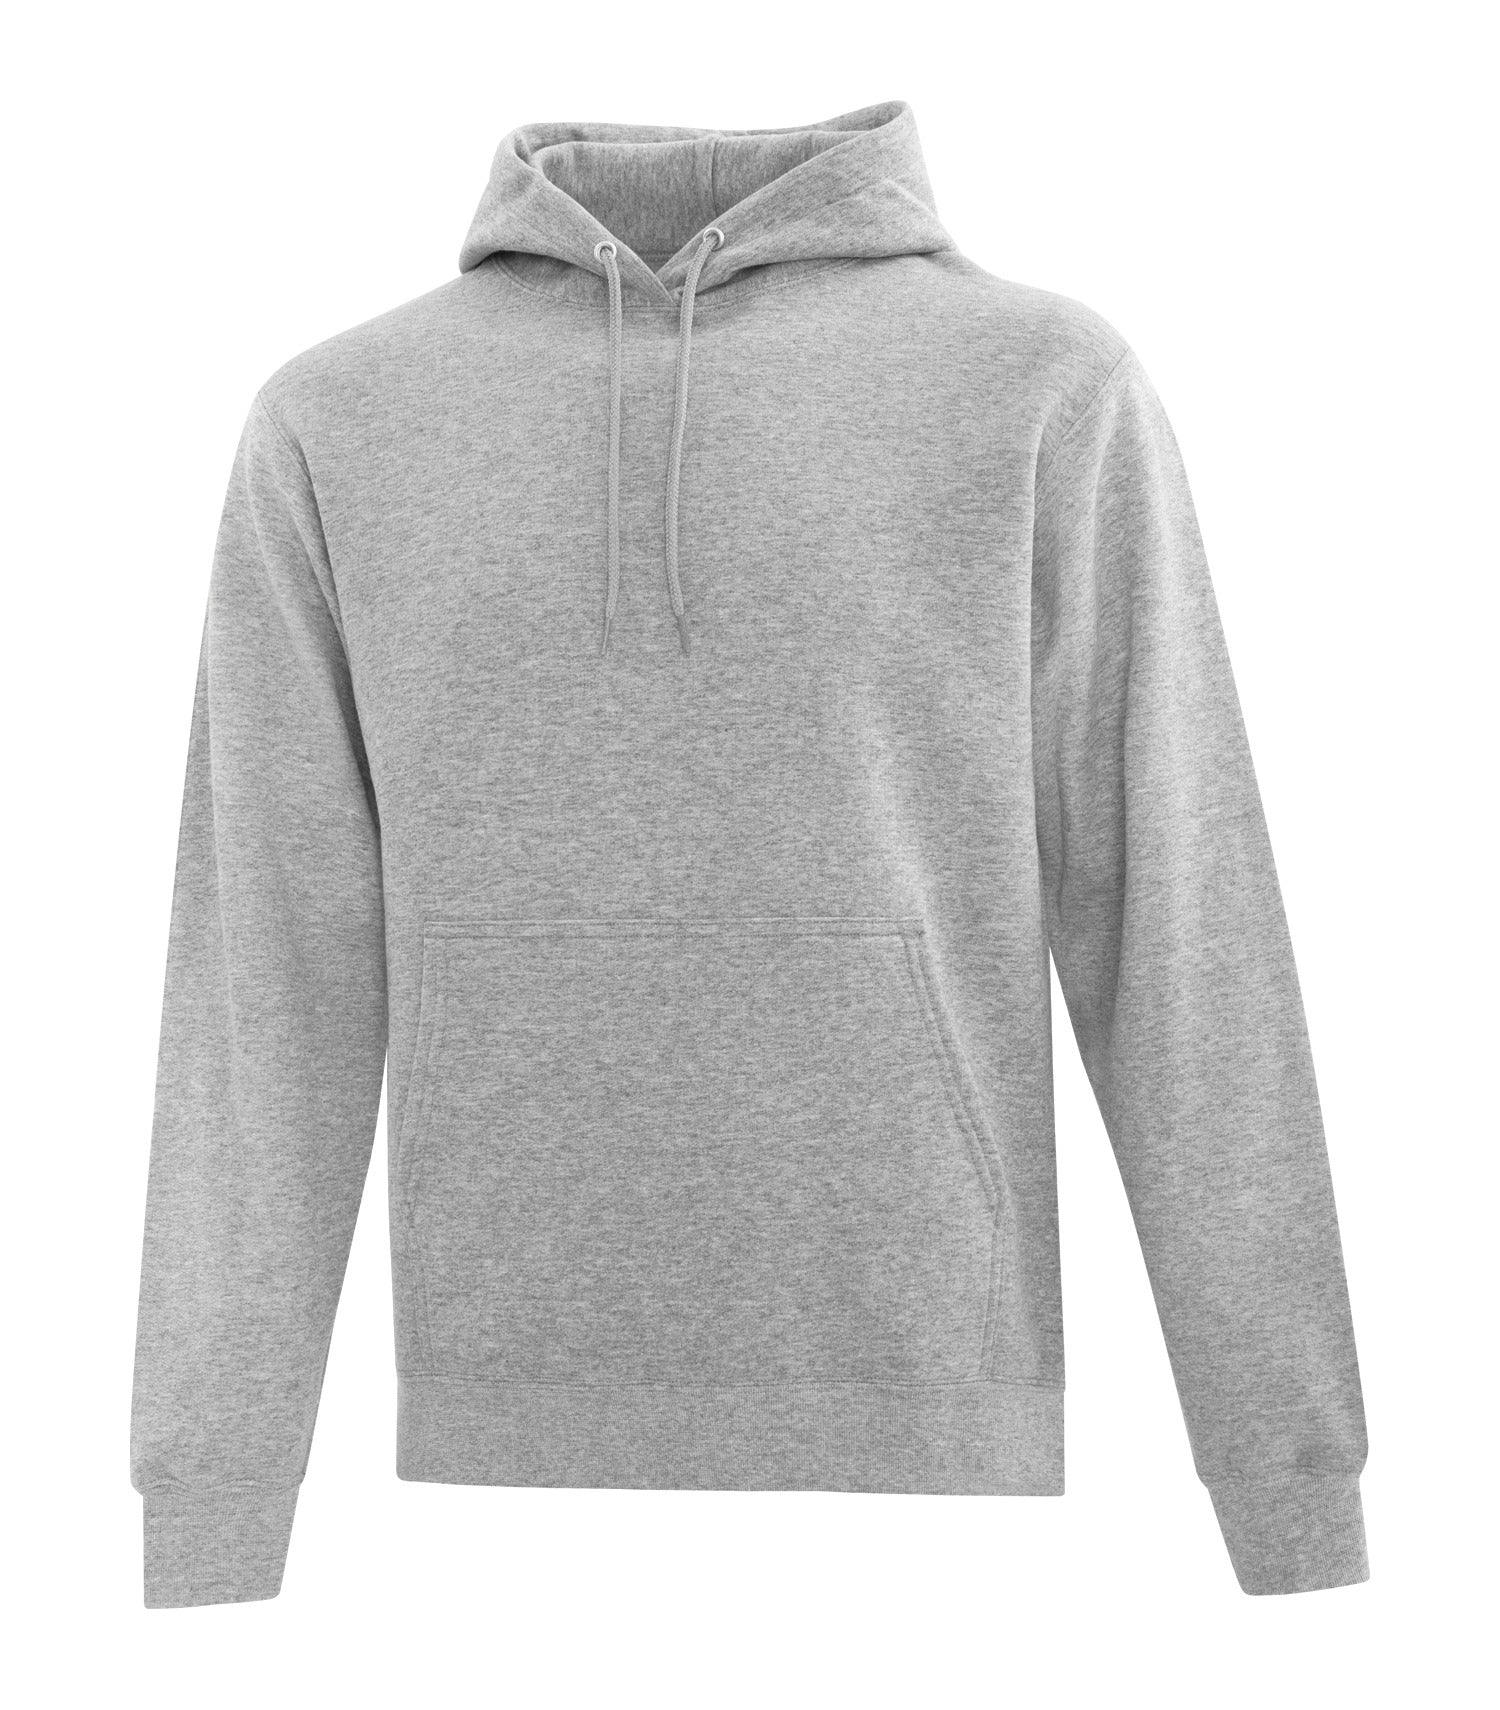 ATCF2500 Everyday Fleece Hooded Sweatshirt - Save-On-Shirts